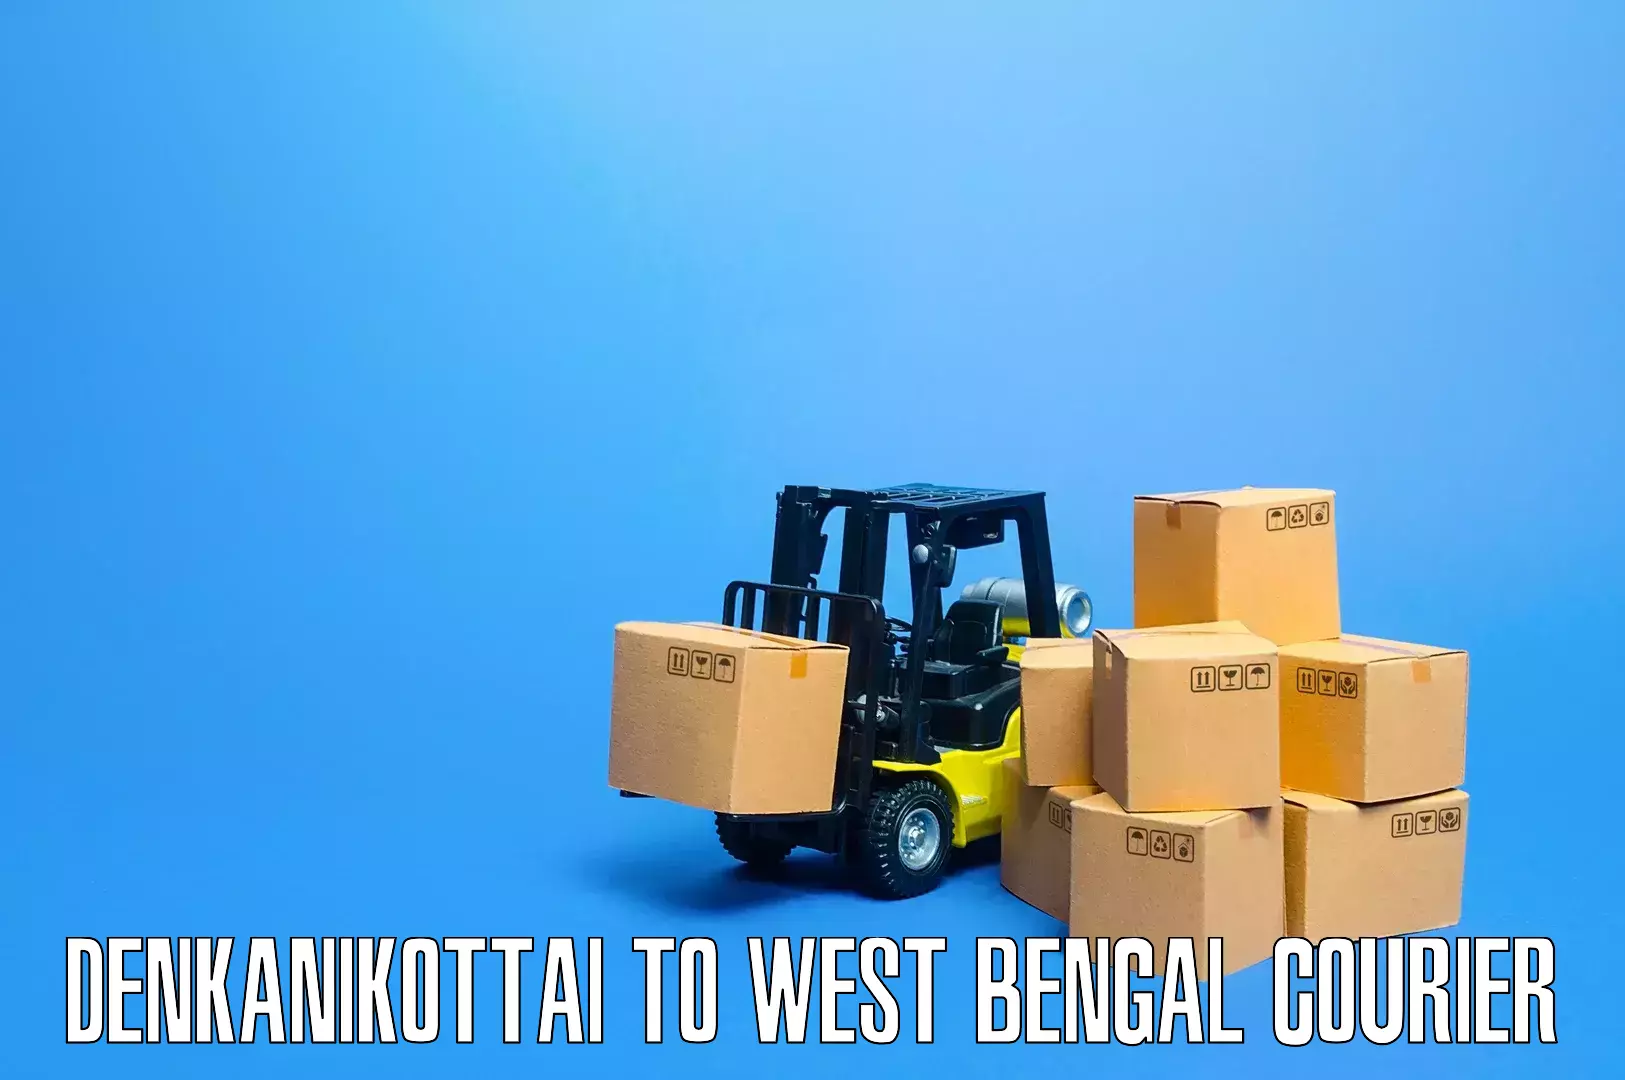 Furniture delivery service Denkanikottai to Hingalganj